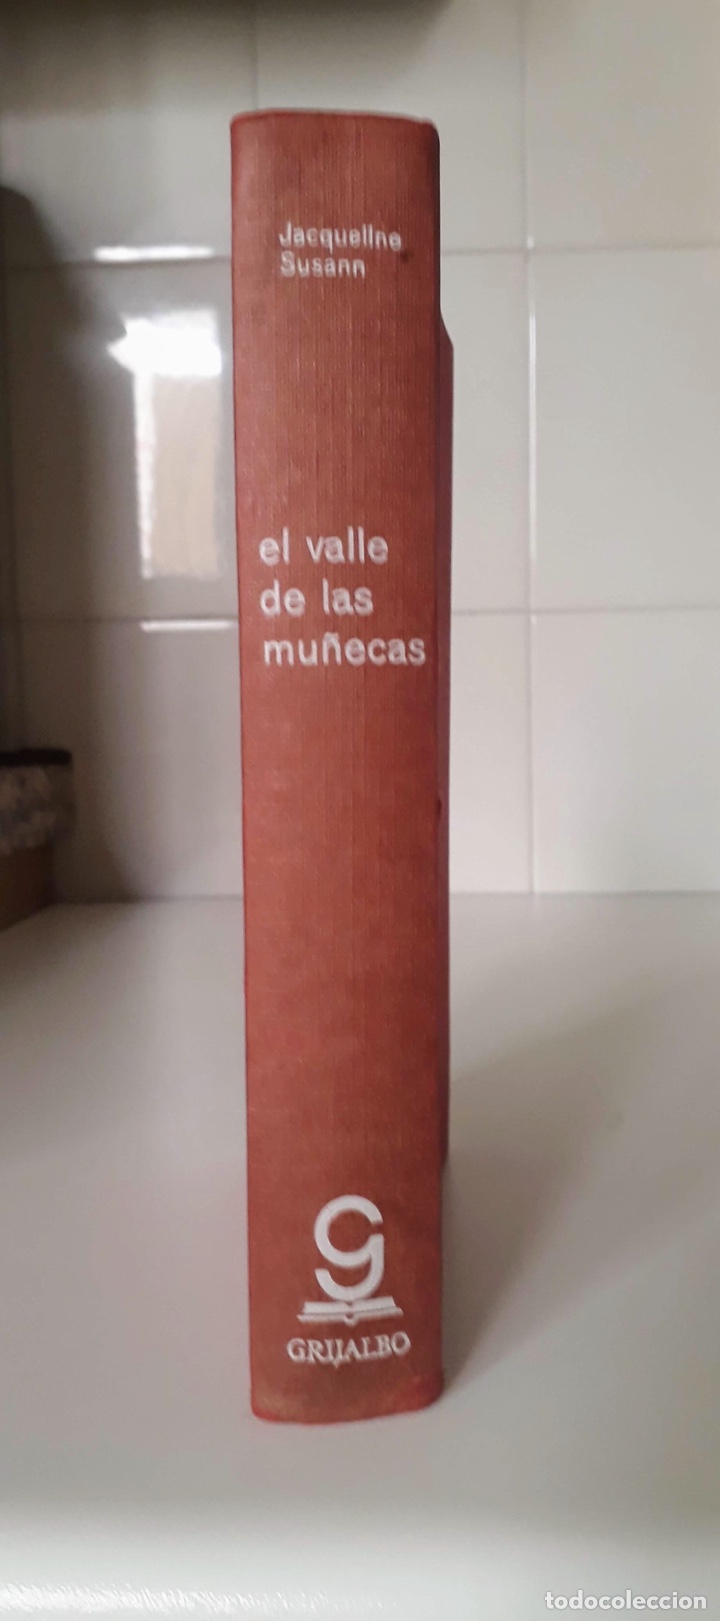 el valle de las muñecas” de jacqueline susann - Comprar Libros de literatura mano en todocoleccion - 249315840